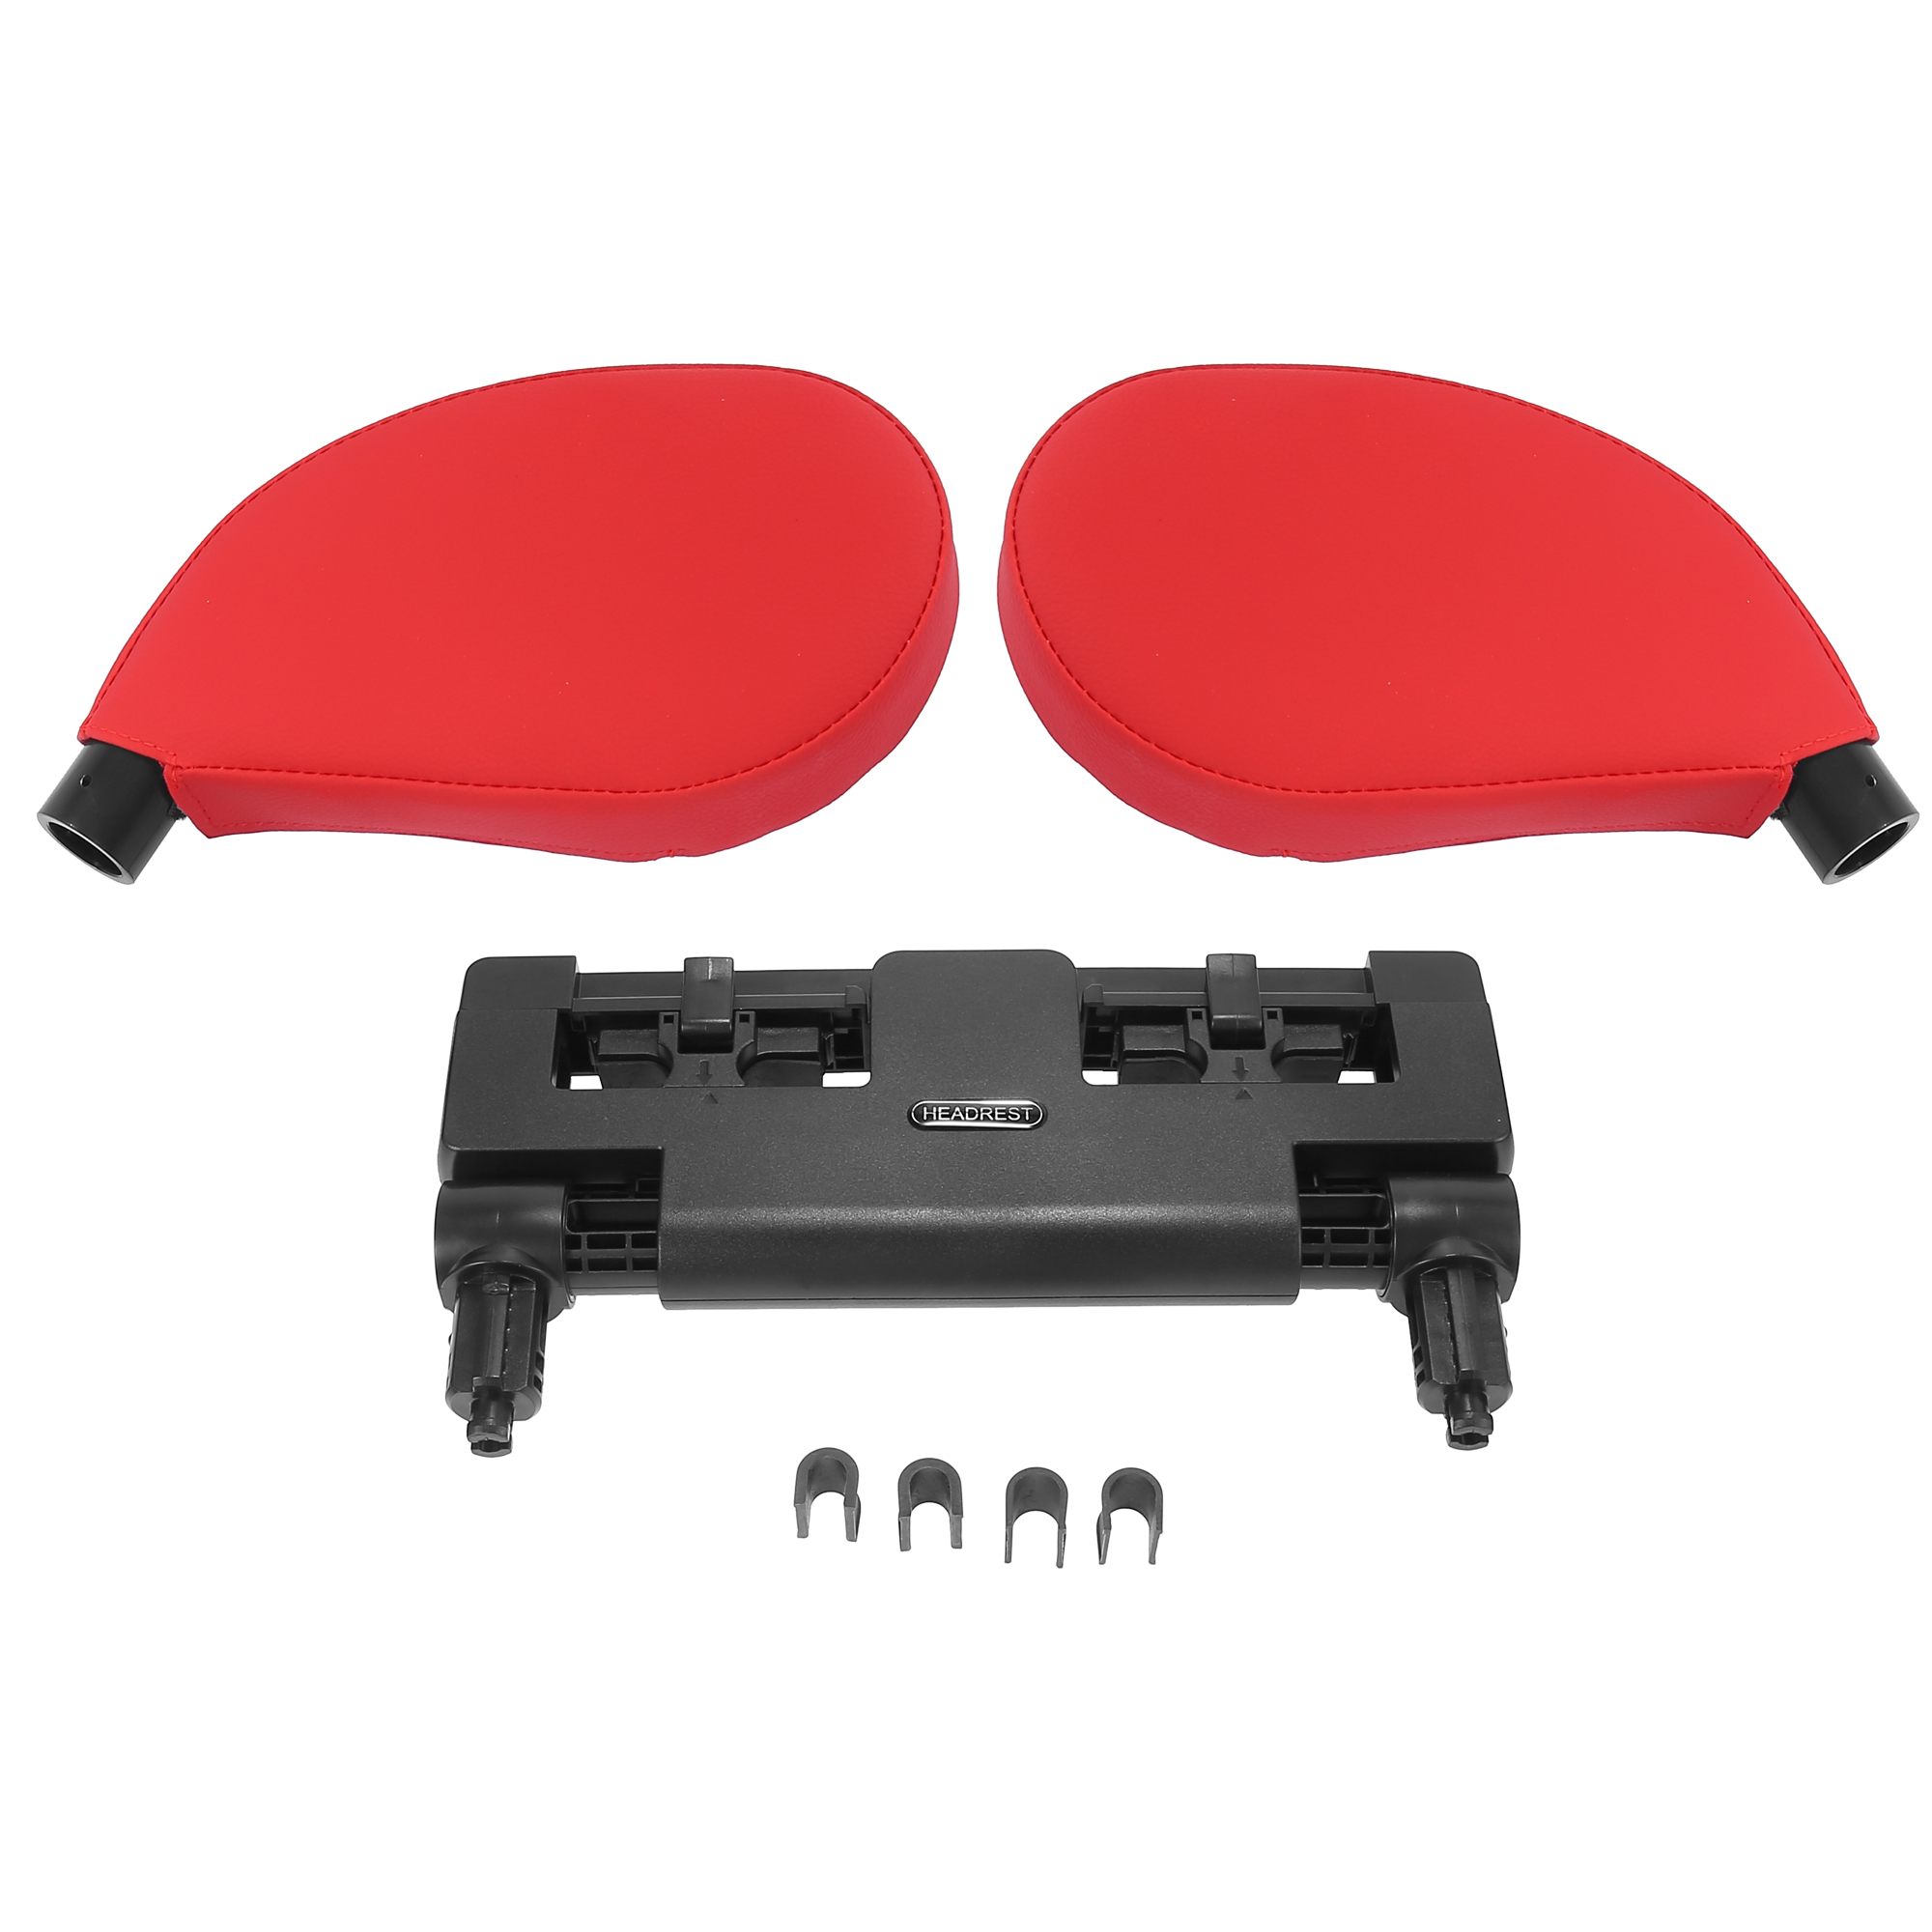 Unique Bargains 360 Degree Adjustable Car Headrest Pillow Detachable Head Neck Support Red